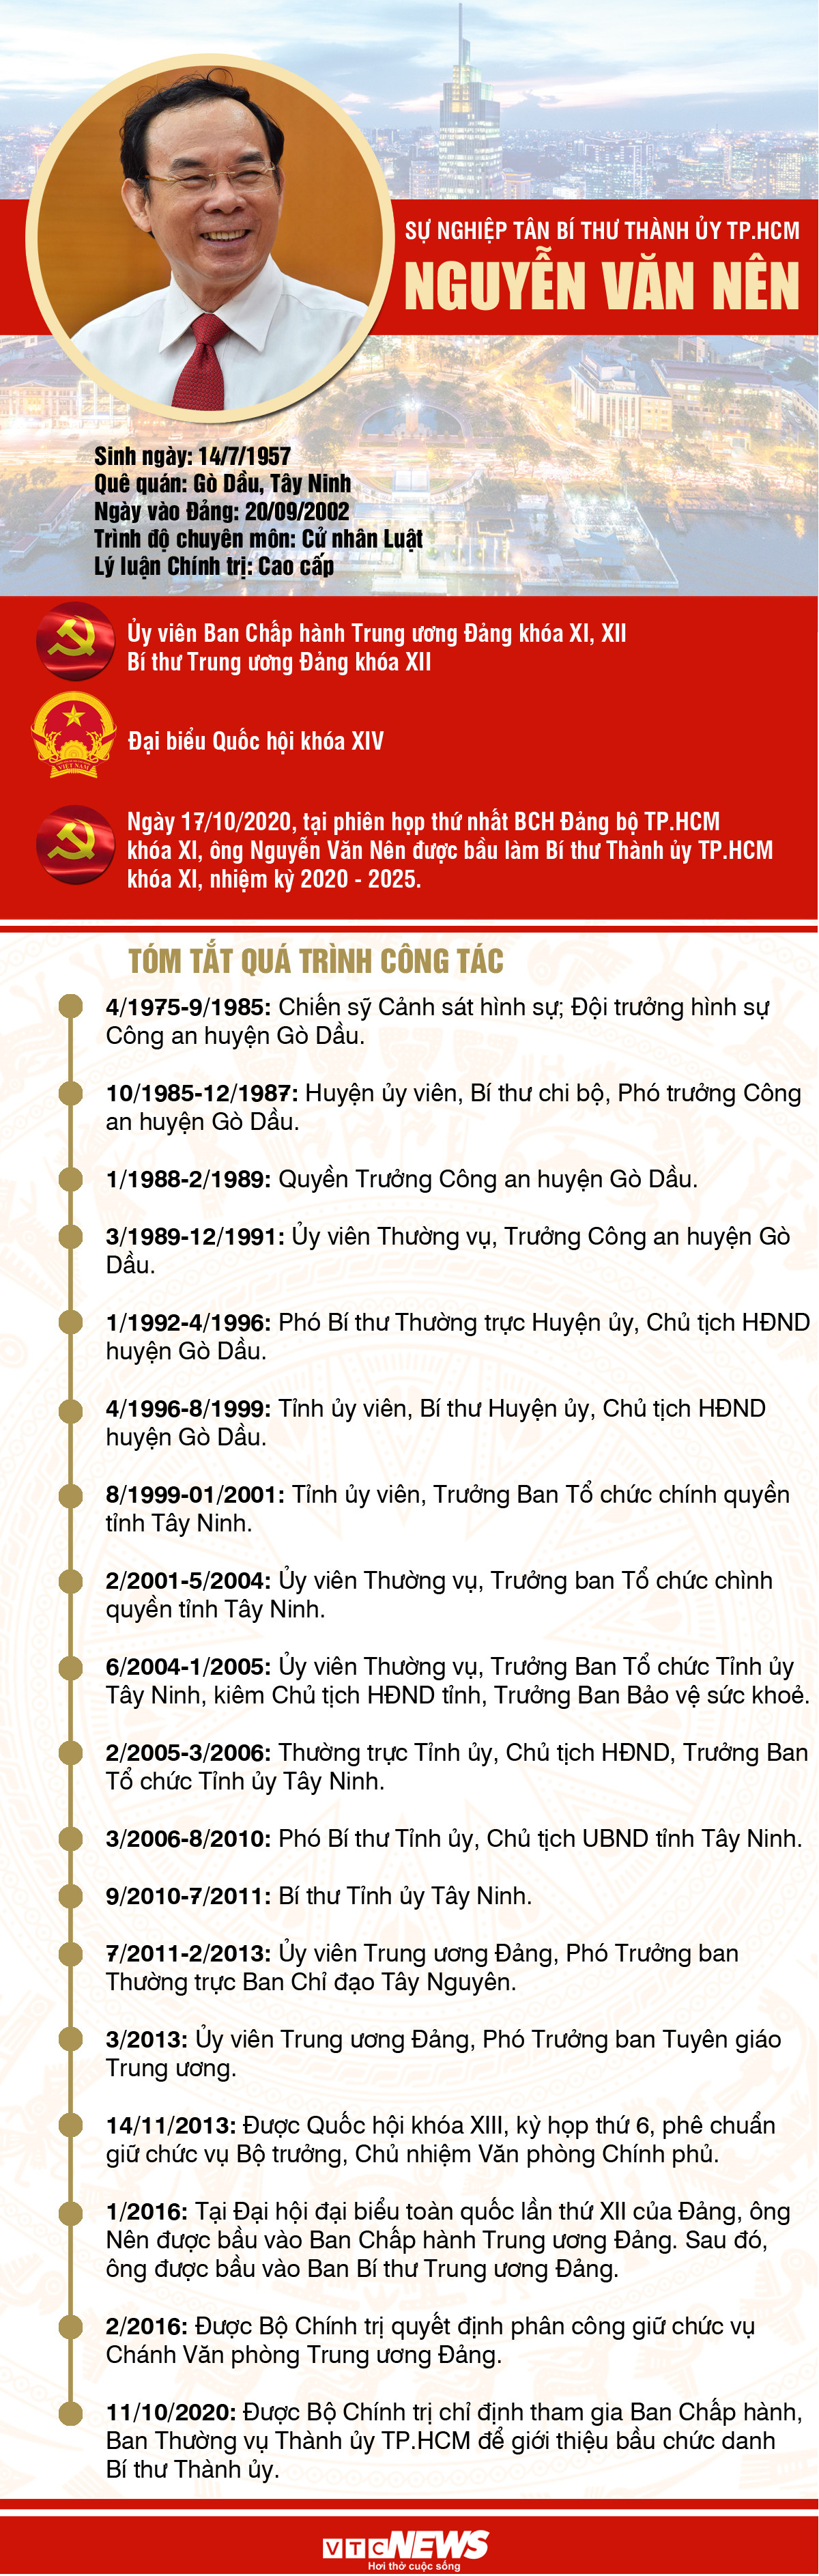 Infographic: Sự nghiệp tân Bí thư Thành ủy TP.HCM Nguyễn Văn Nên - 1